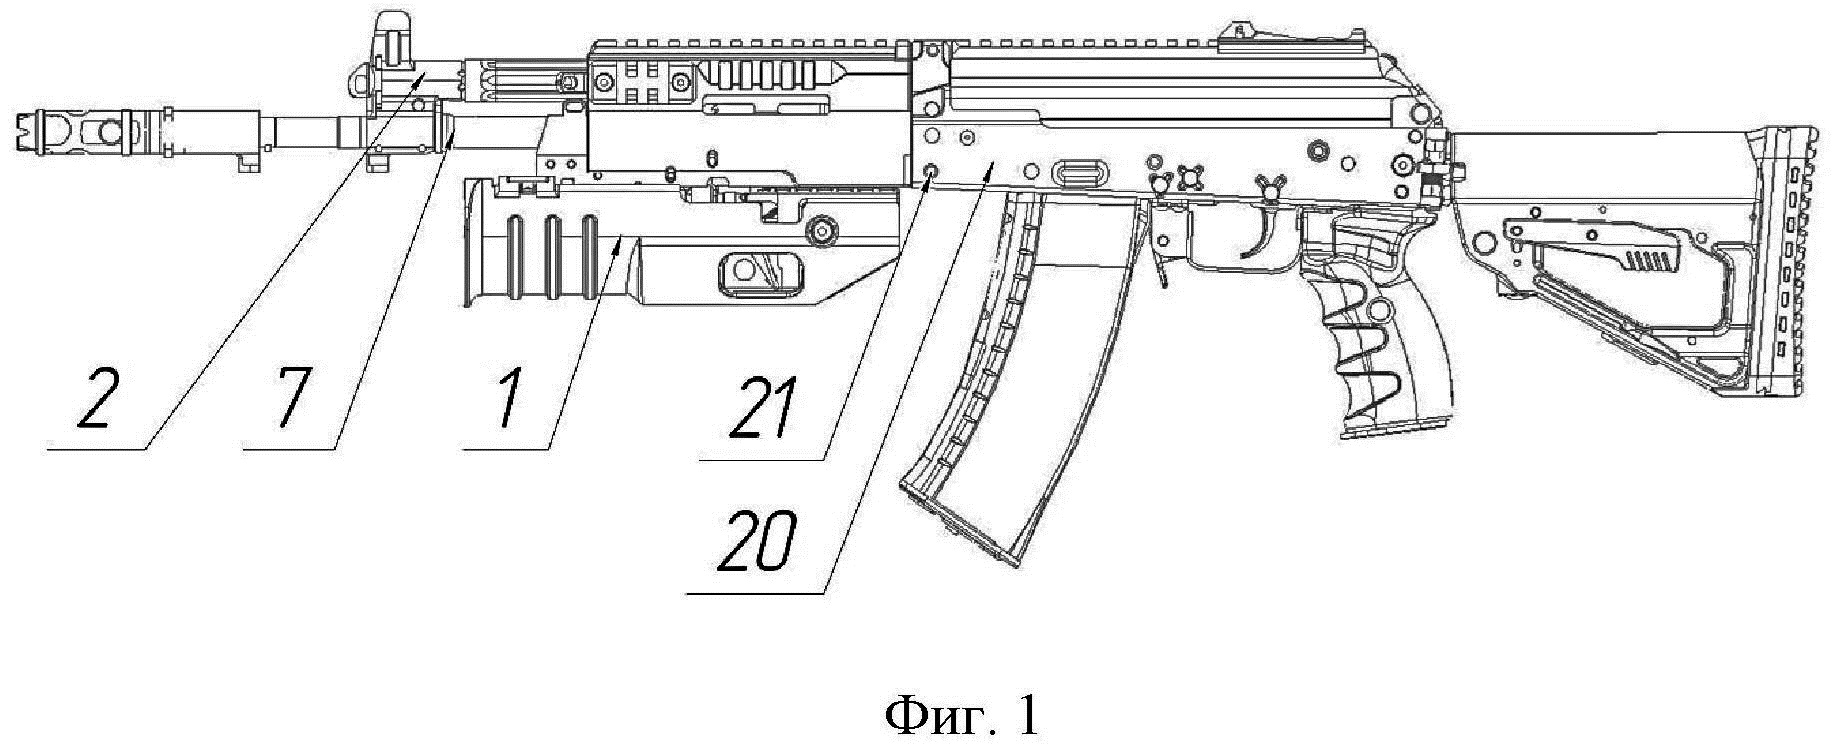 АК-12 автомат чертеж